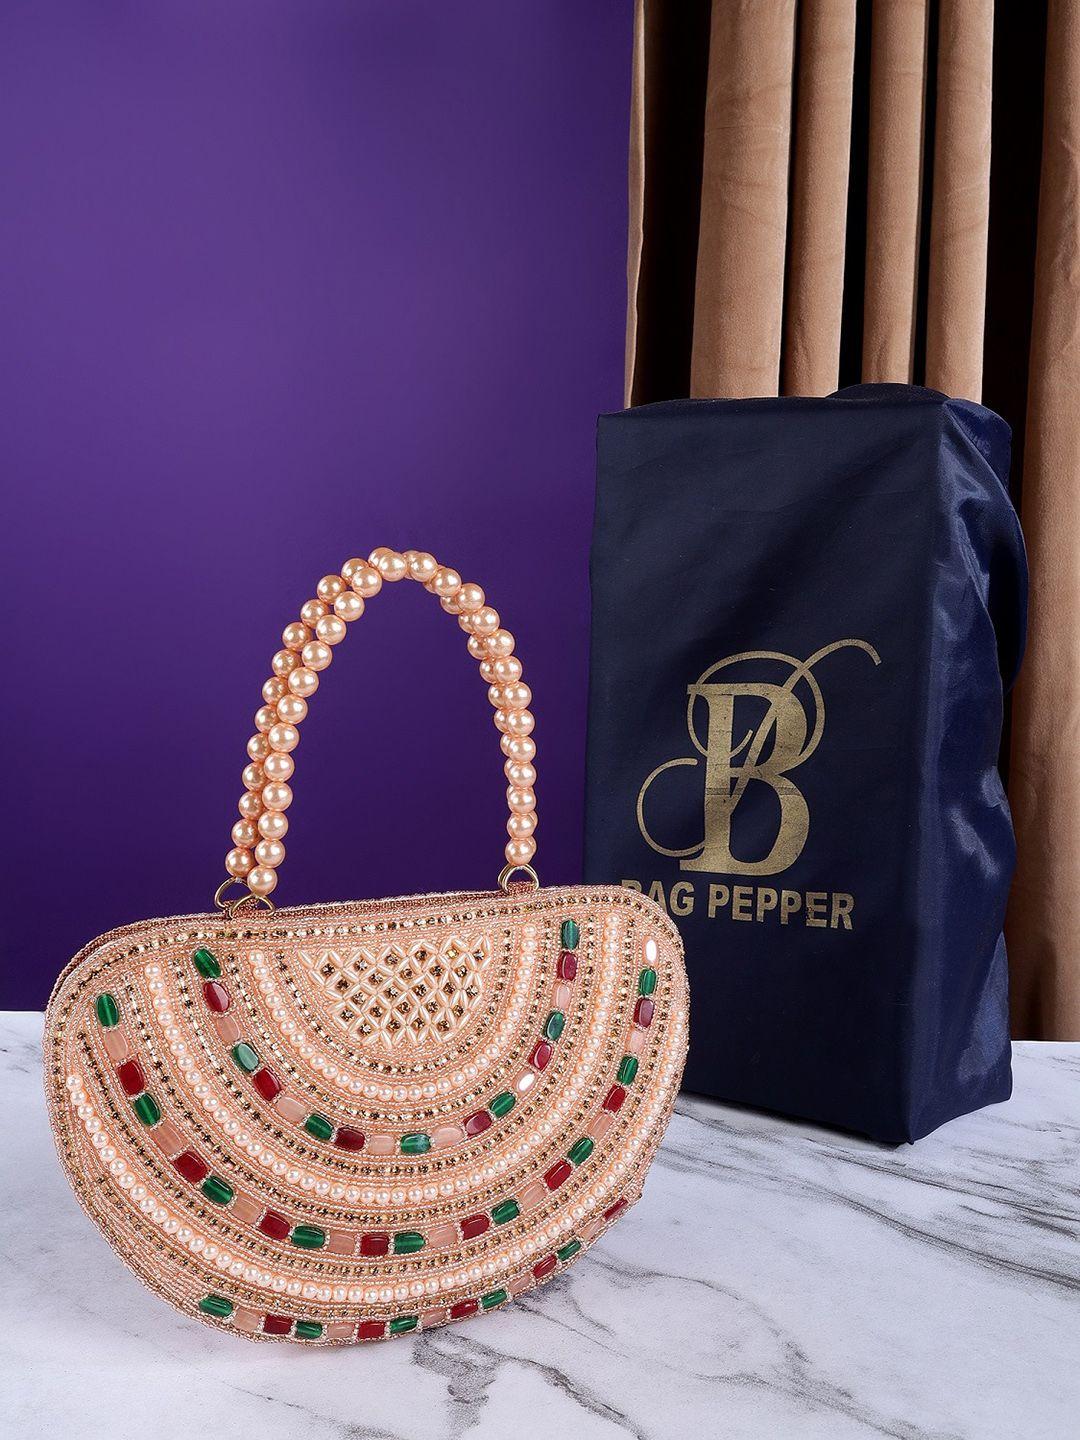 bag pepper embellished structured handheld bag